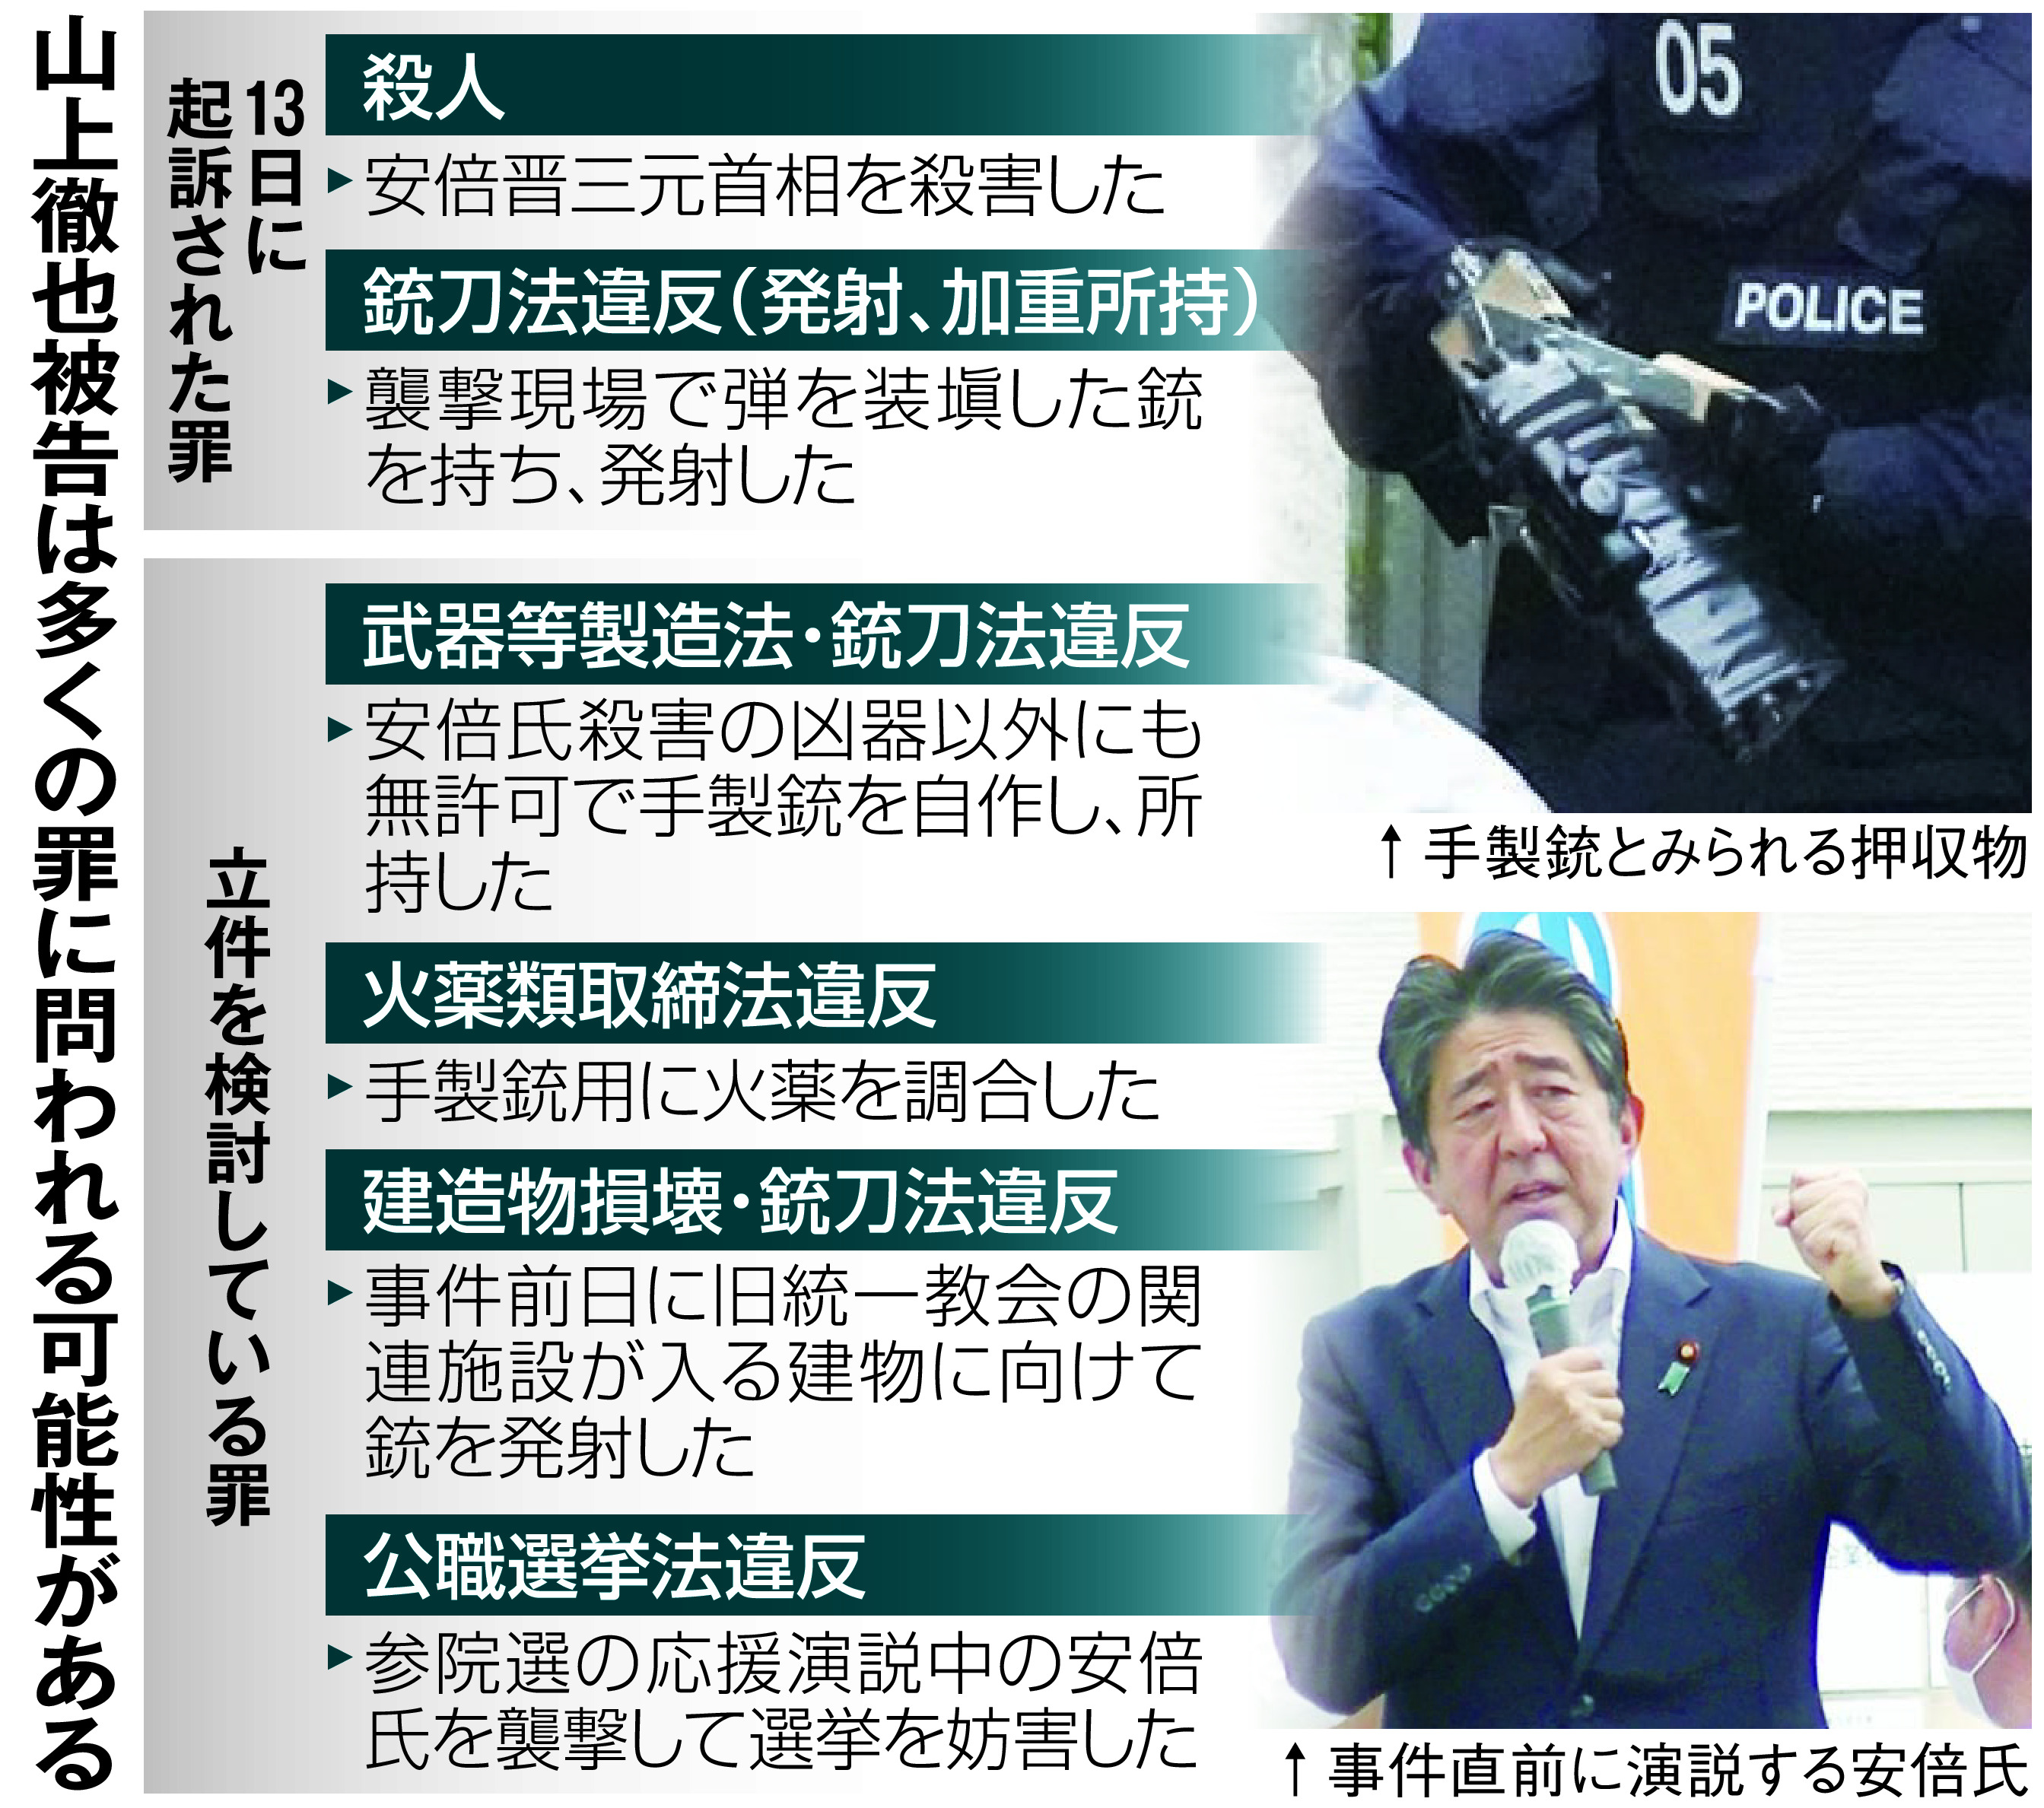 元首相銃撃 量刑の鍵握る動機 - 産経ニュース